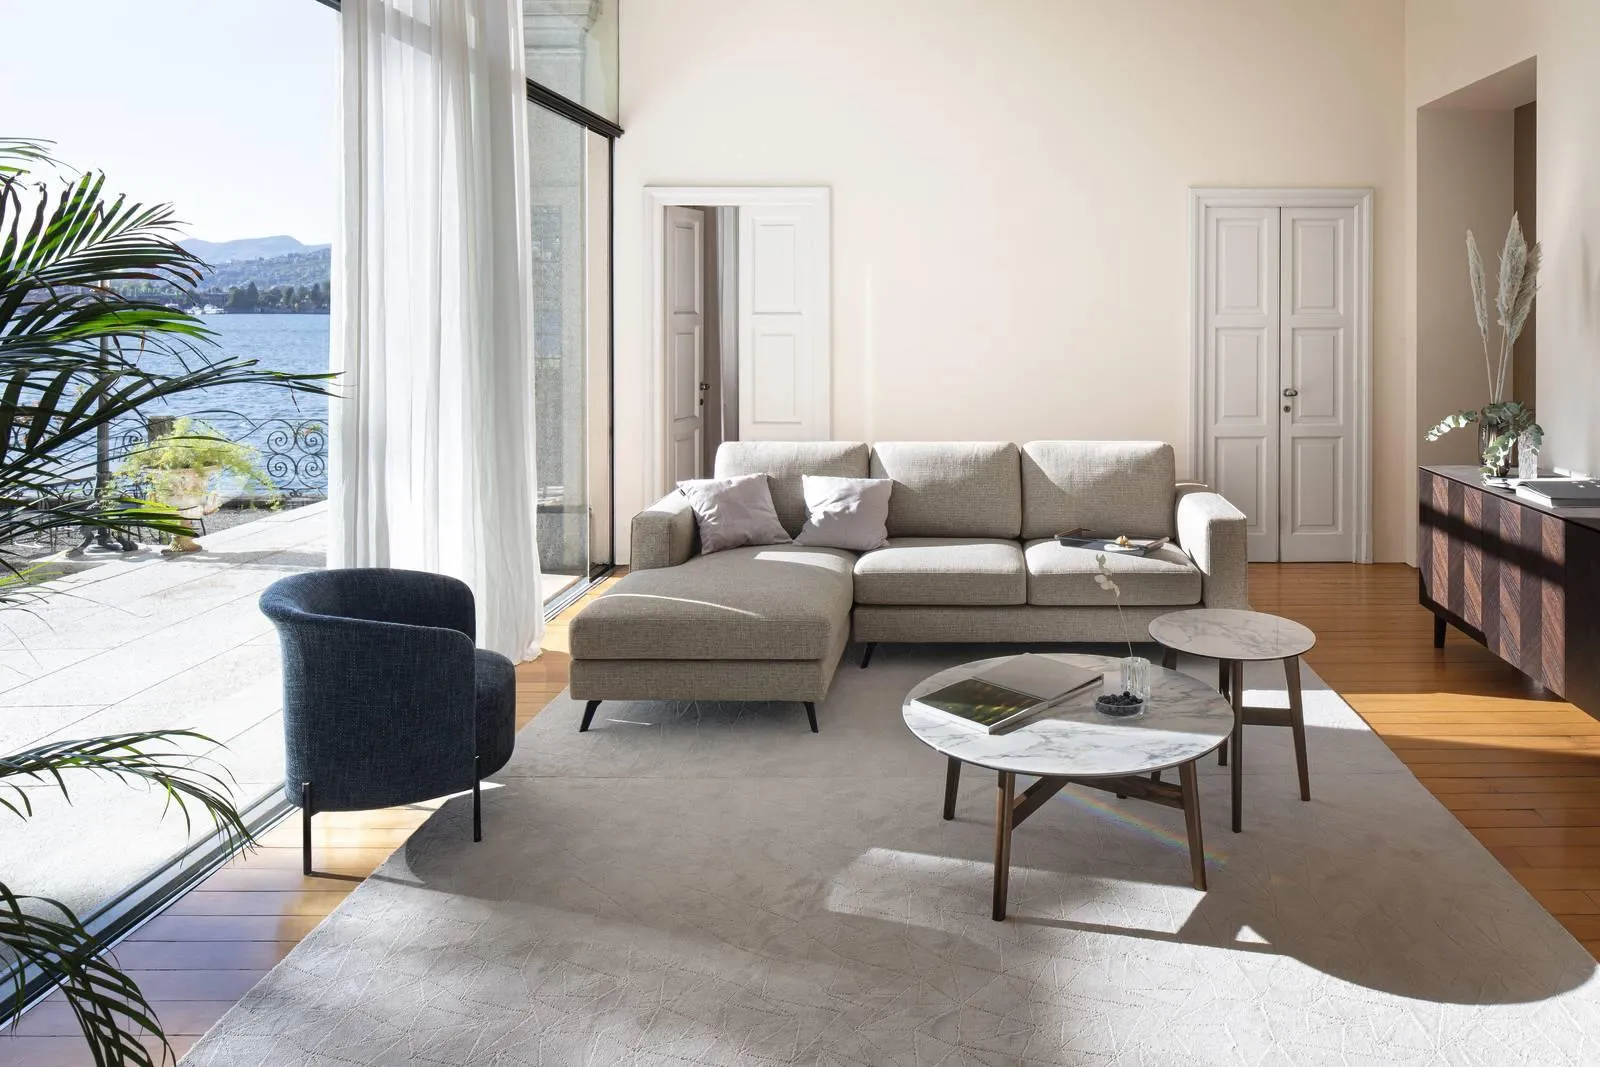 Scegliere il divano: piccolo, tre posti, con penisola o angolare